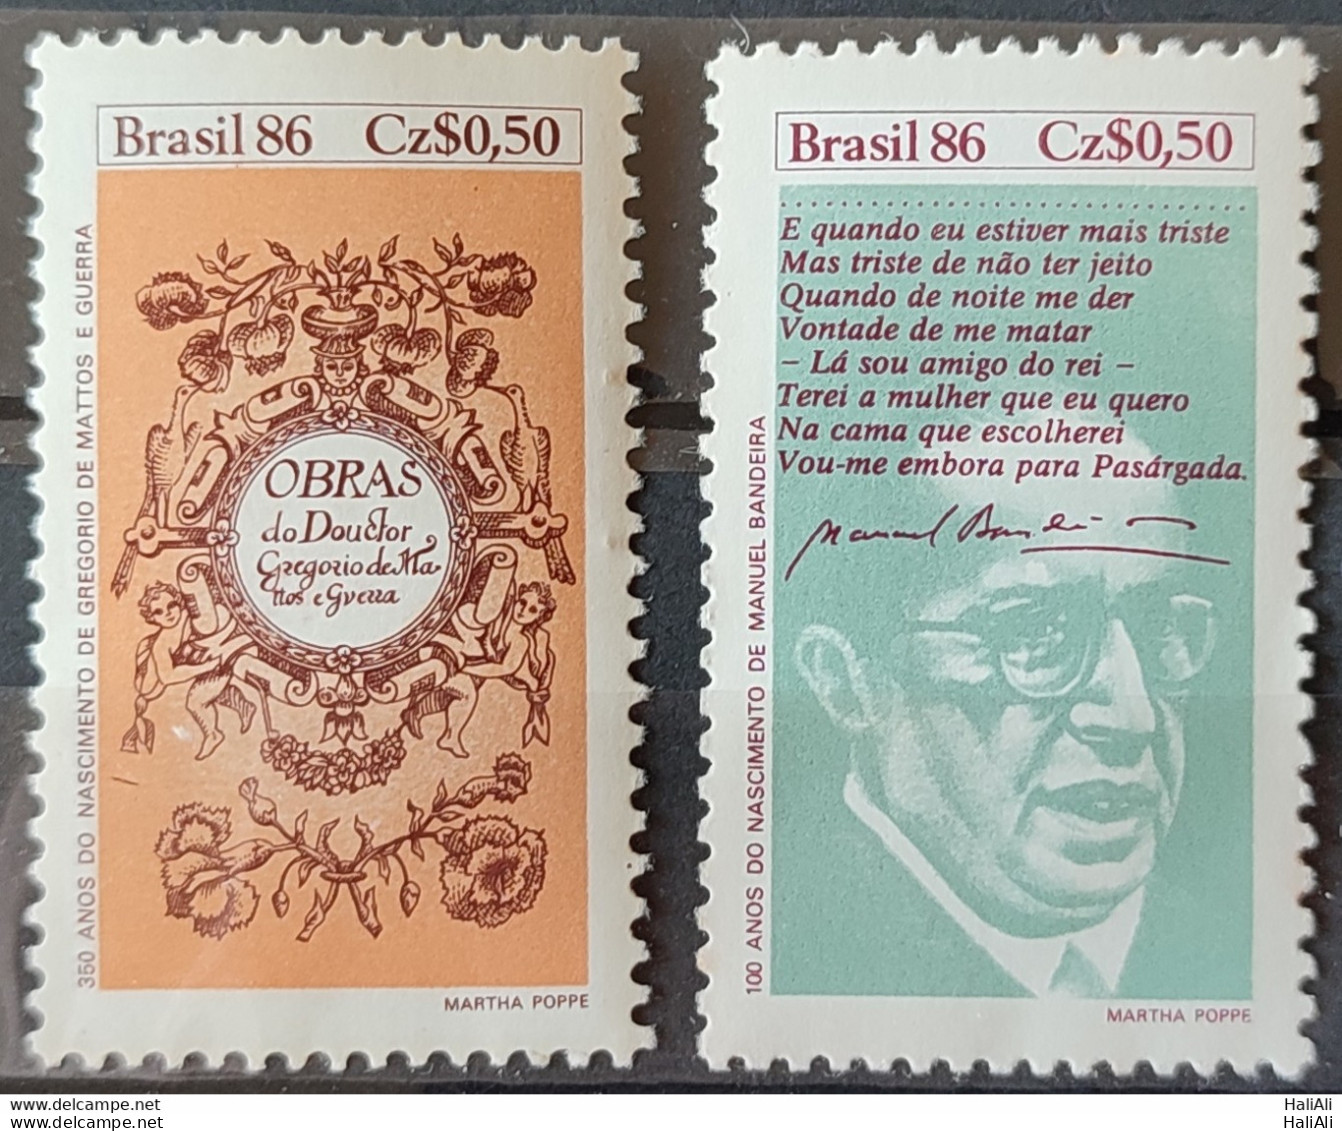 C 1527 Brazil Stamp Book Day Literature Gregorio De Mattos Guerra Manuel Bandeira 1986 Complete Series.jpg - Ungebraucht